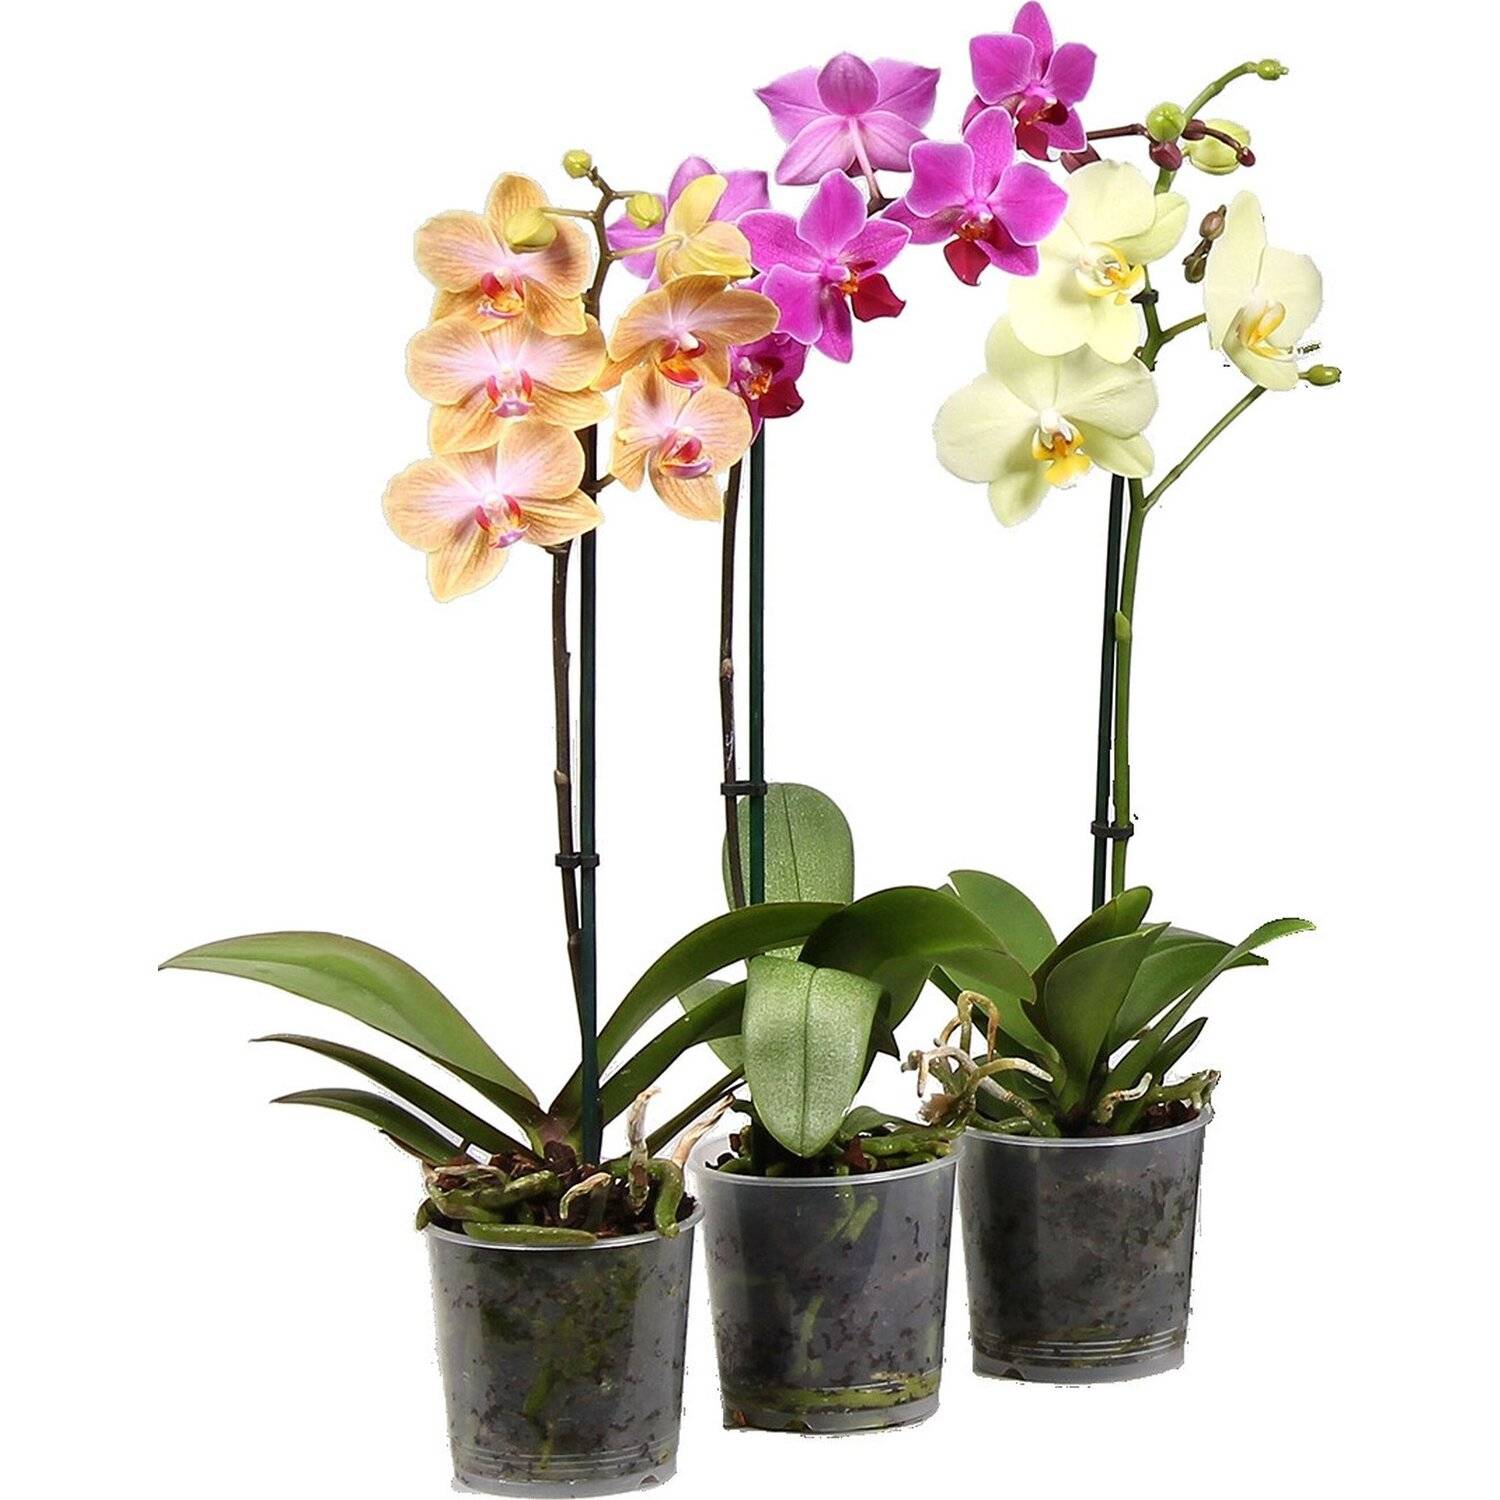 Красавица орхидея в природе — жизнь фаленопсиса в диких условиях и отличия от домашнего цветка